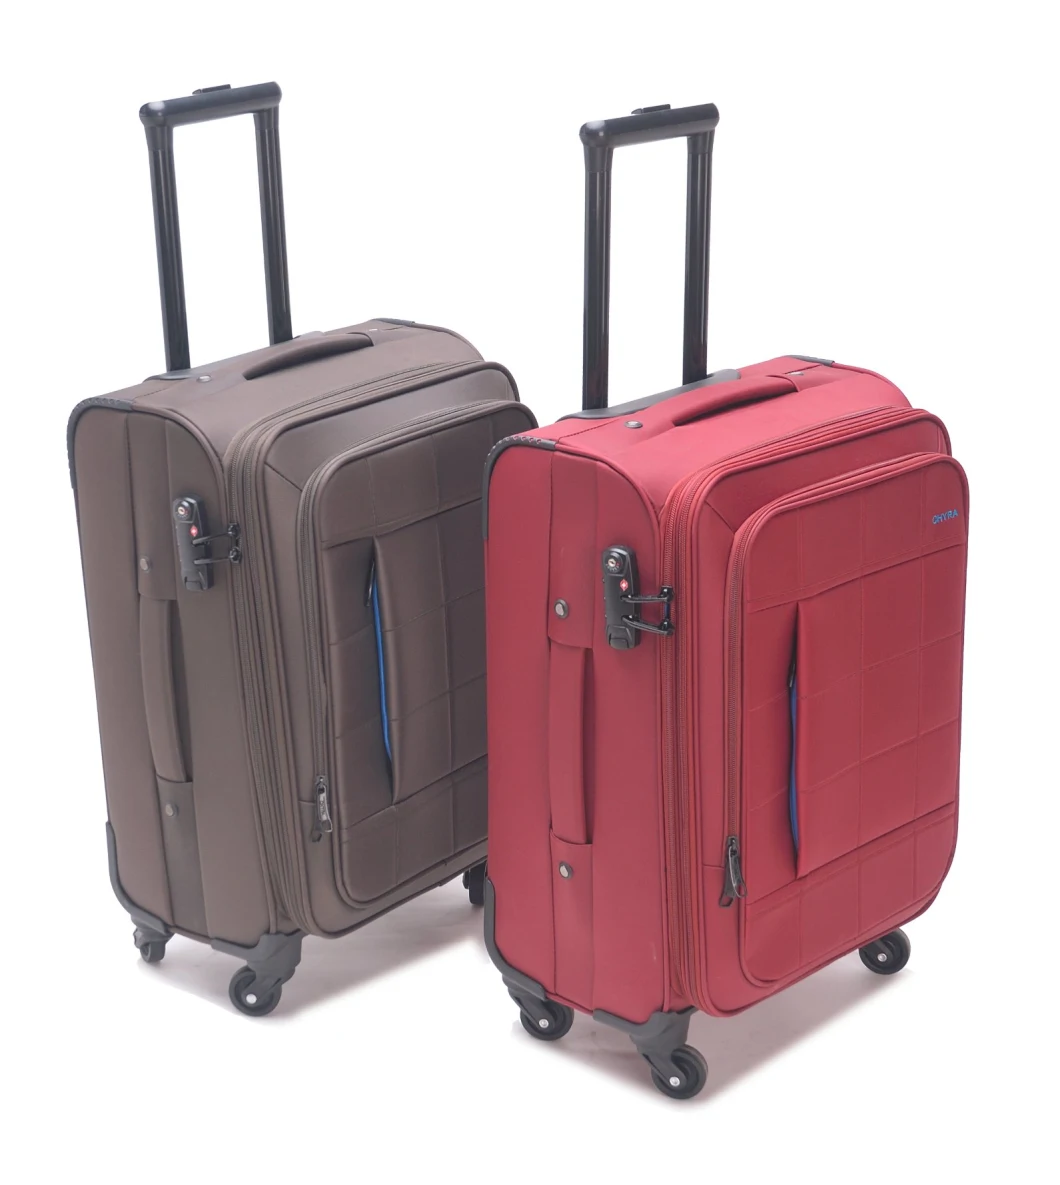 Good Quality Trolley Luggage Travel Luggage Soft Luggage with Tsa Lock